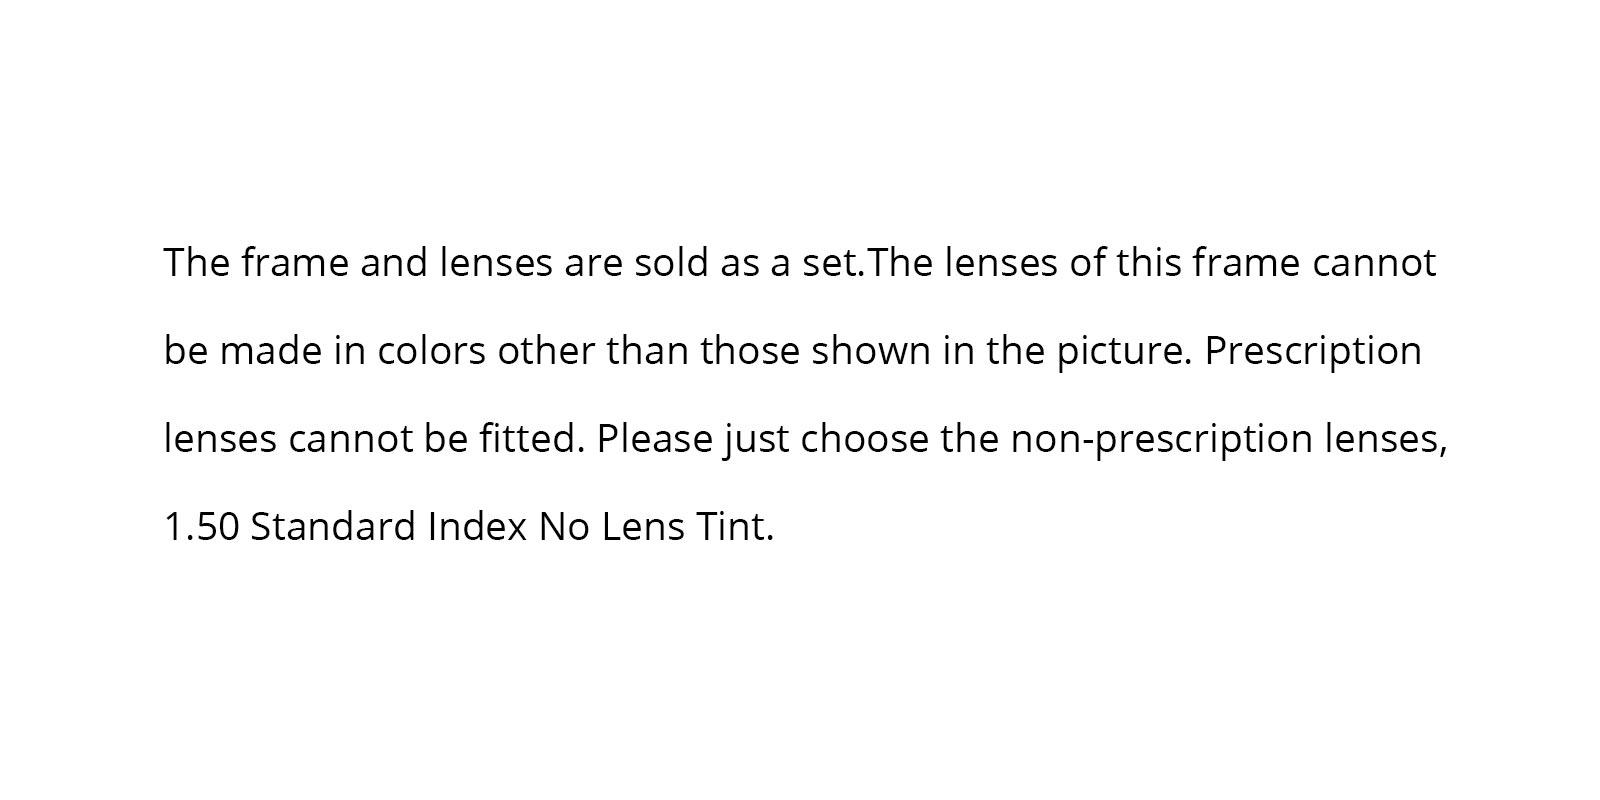 Zed Non Prescription Sunglasses-Purple-Square-Metal-Sunglasses-detail